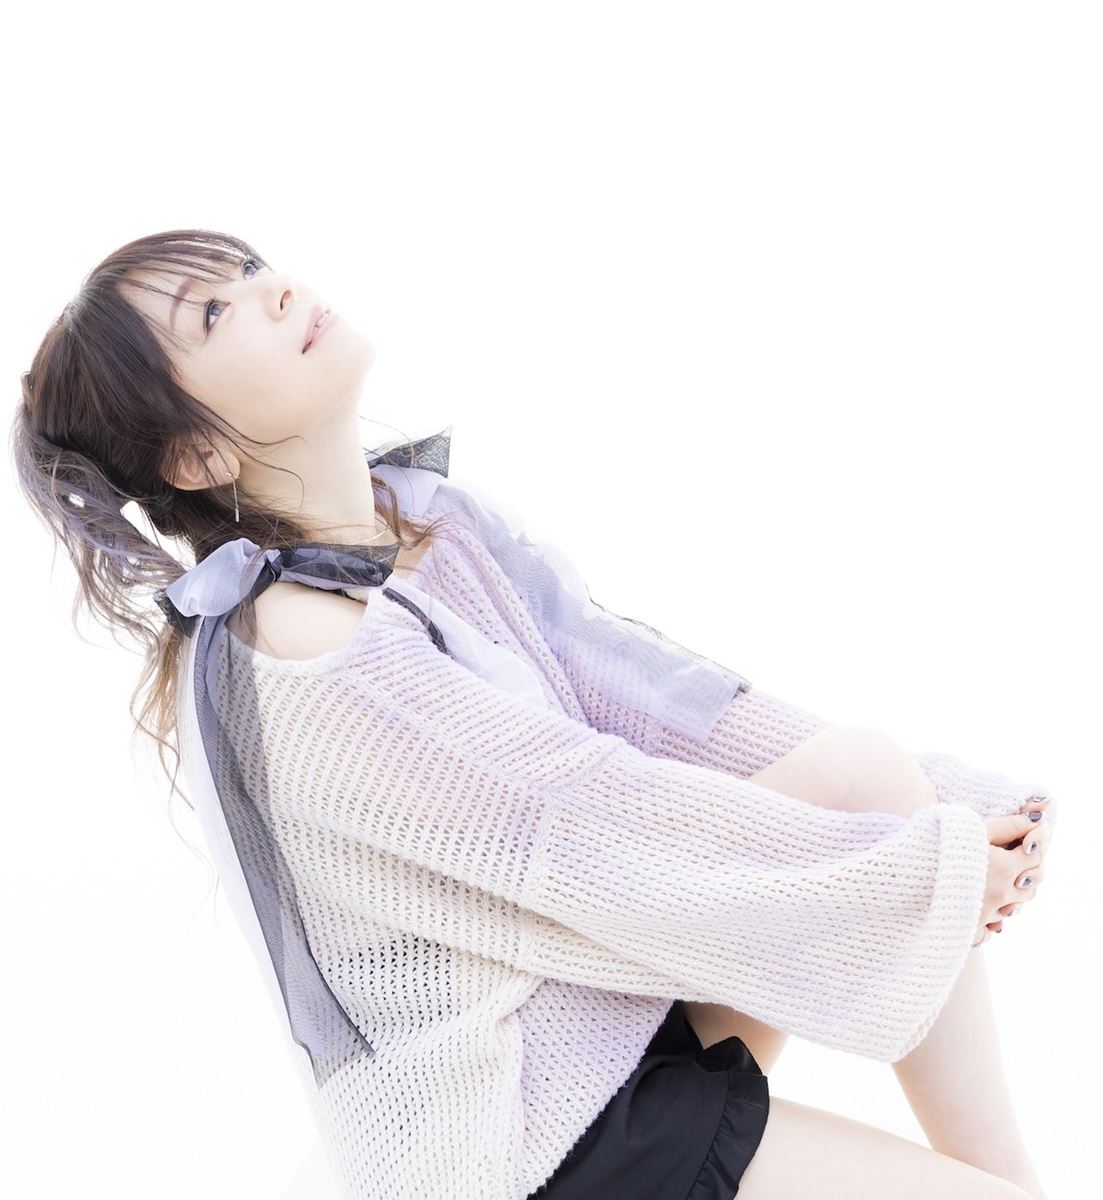 Kotoko アニソンベストアルバムリリース キングスレイド Edテーマ曲も同時発売に ぴあエンタメ情報